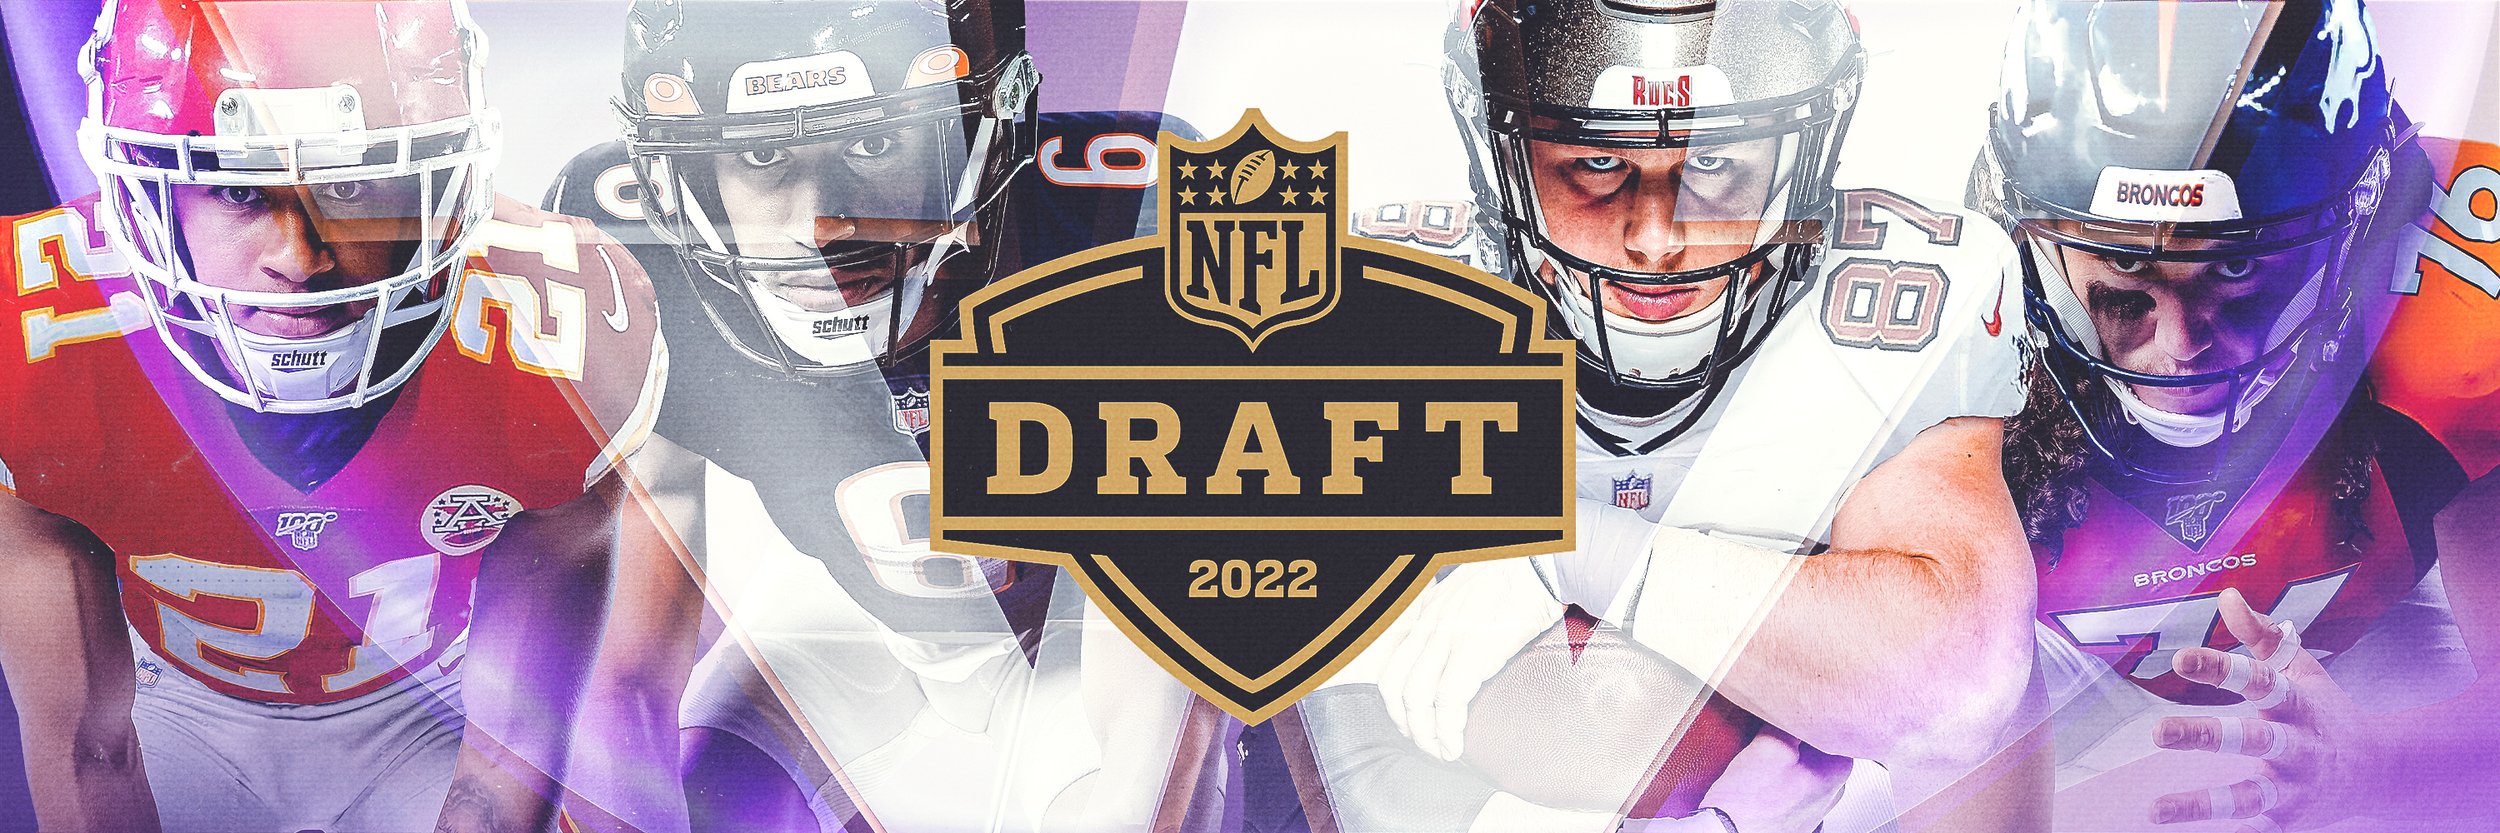 UWFB2022_NFL_Draft_Picks_Twitter_Header1500x500.jpg